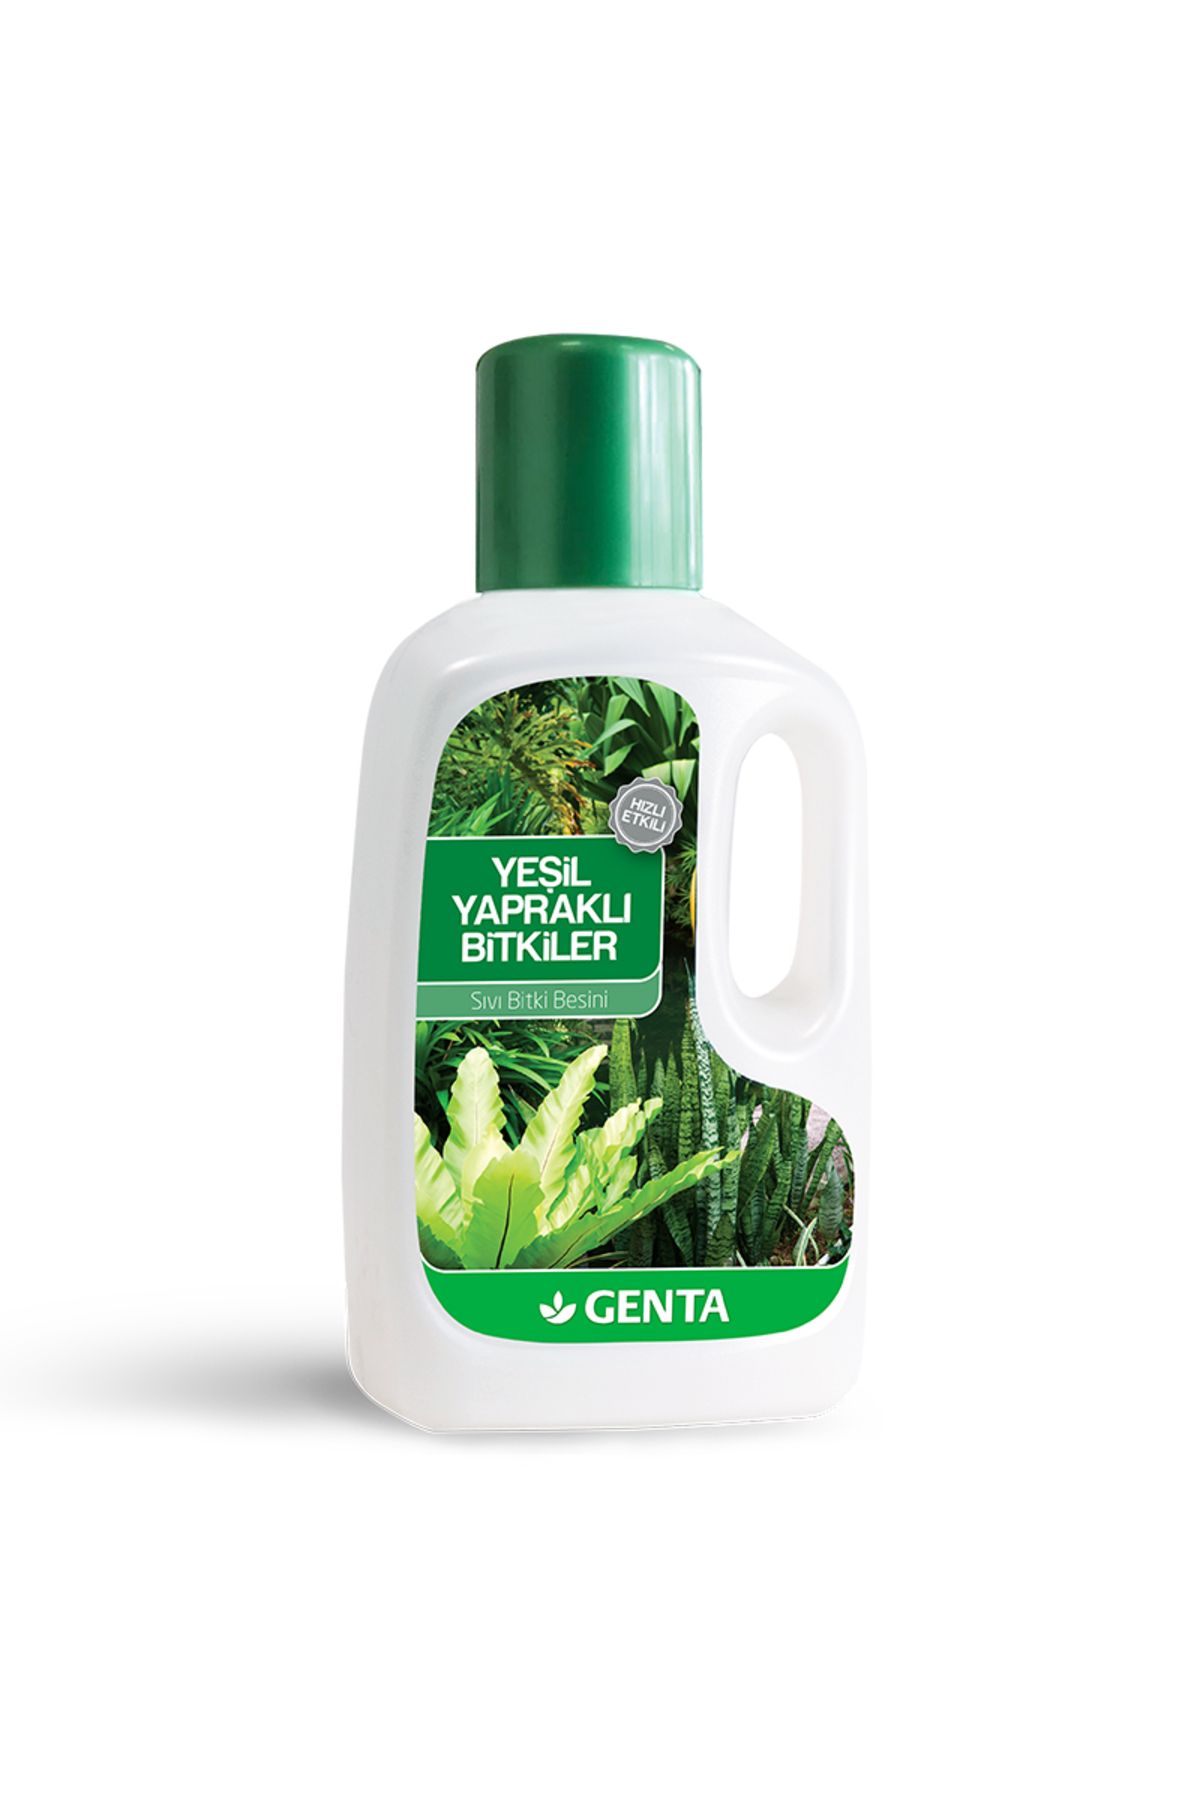 Genta Yeşil Yapraklı Bitkiler Için Sıvı Besin